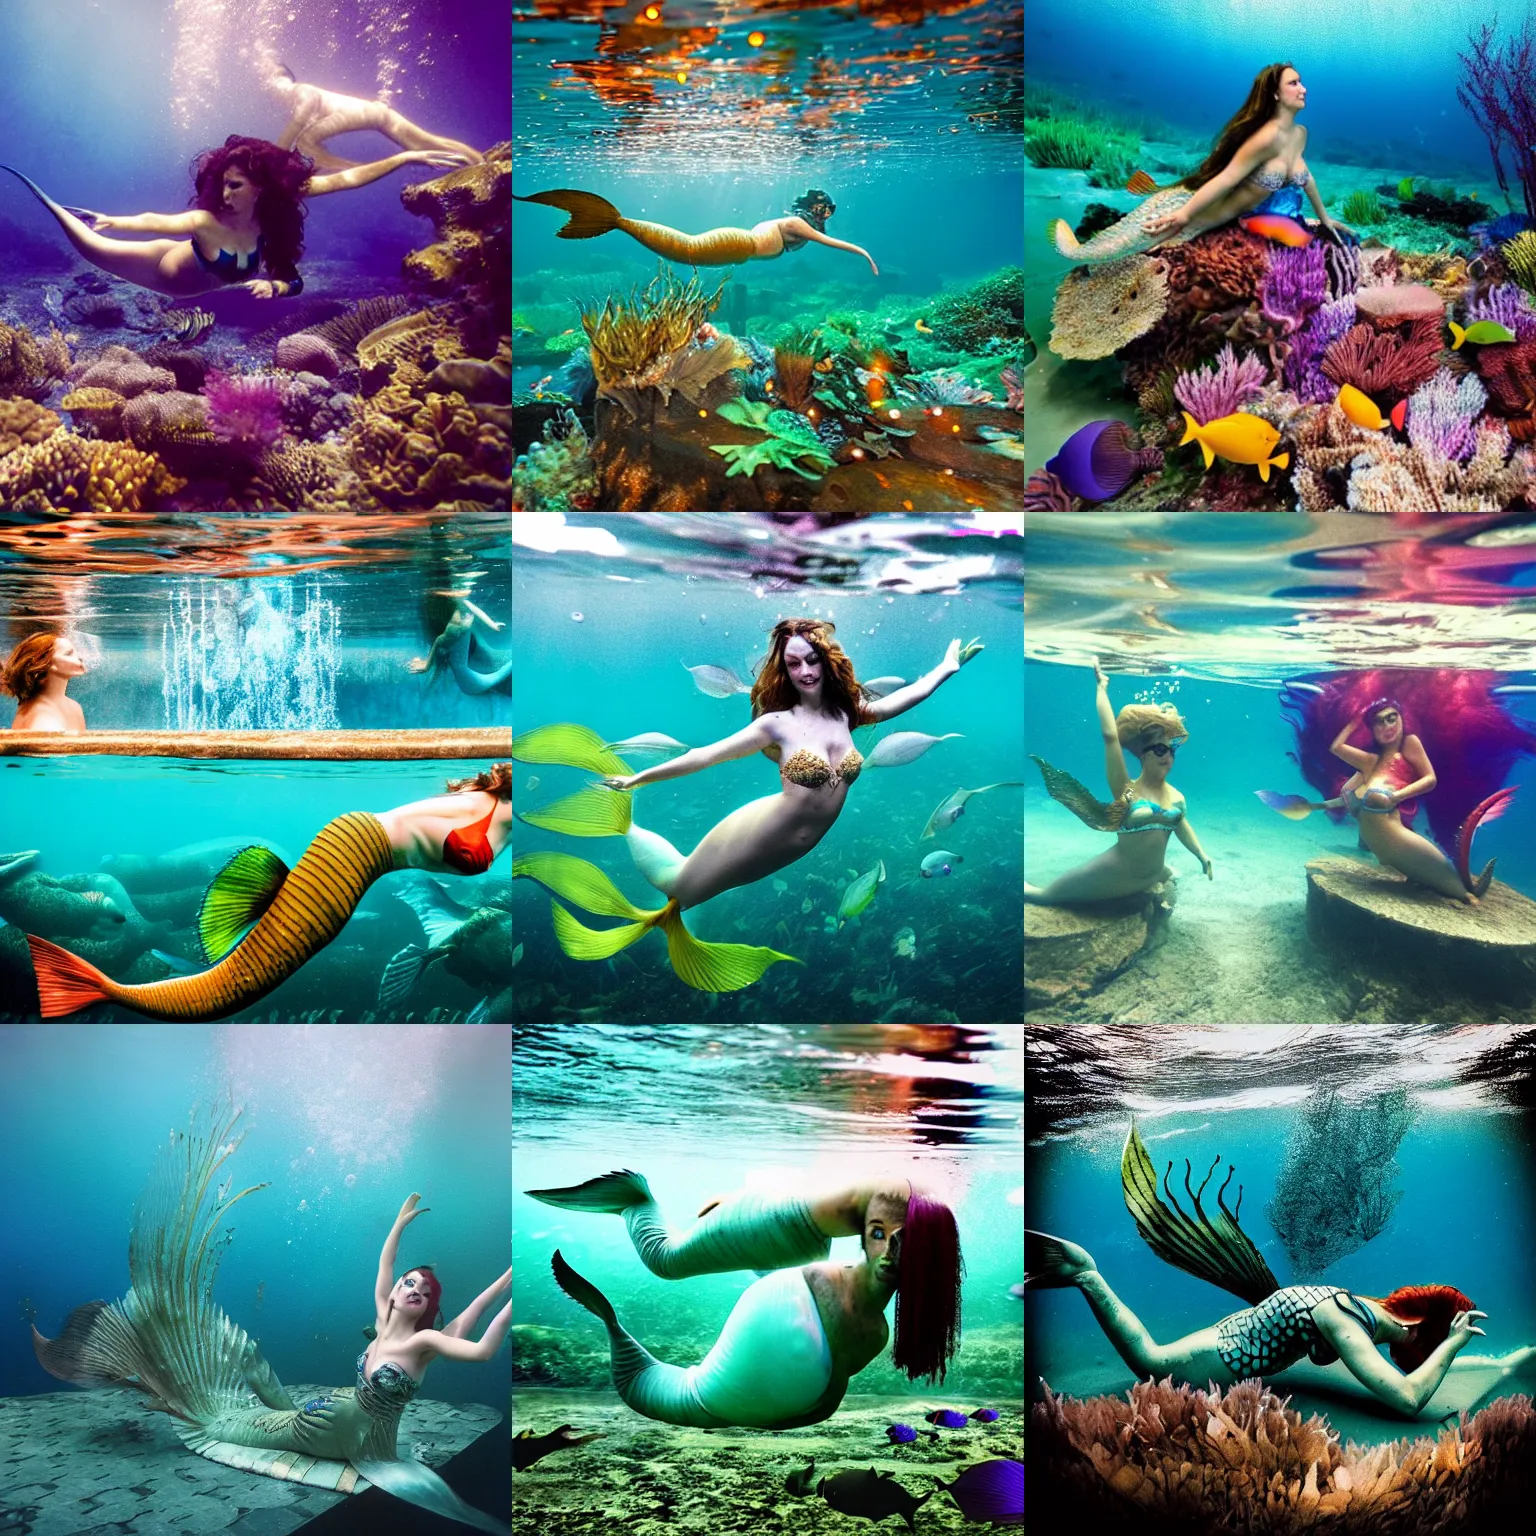 Prompt: NYC, underwater, mermaids